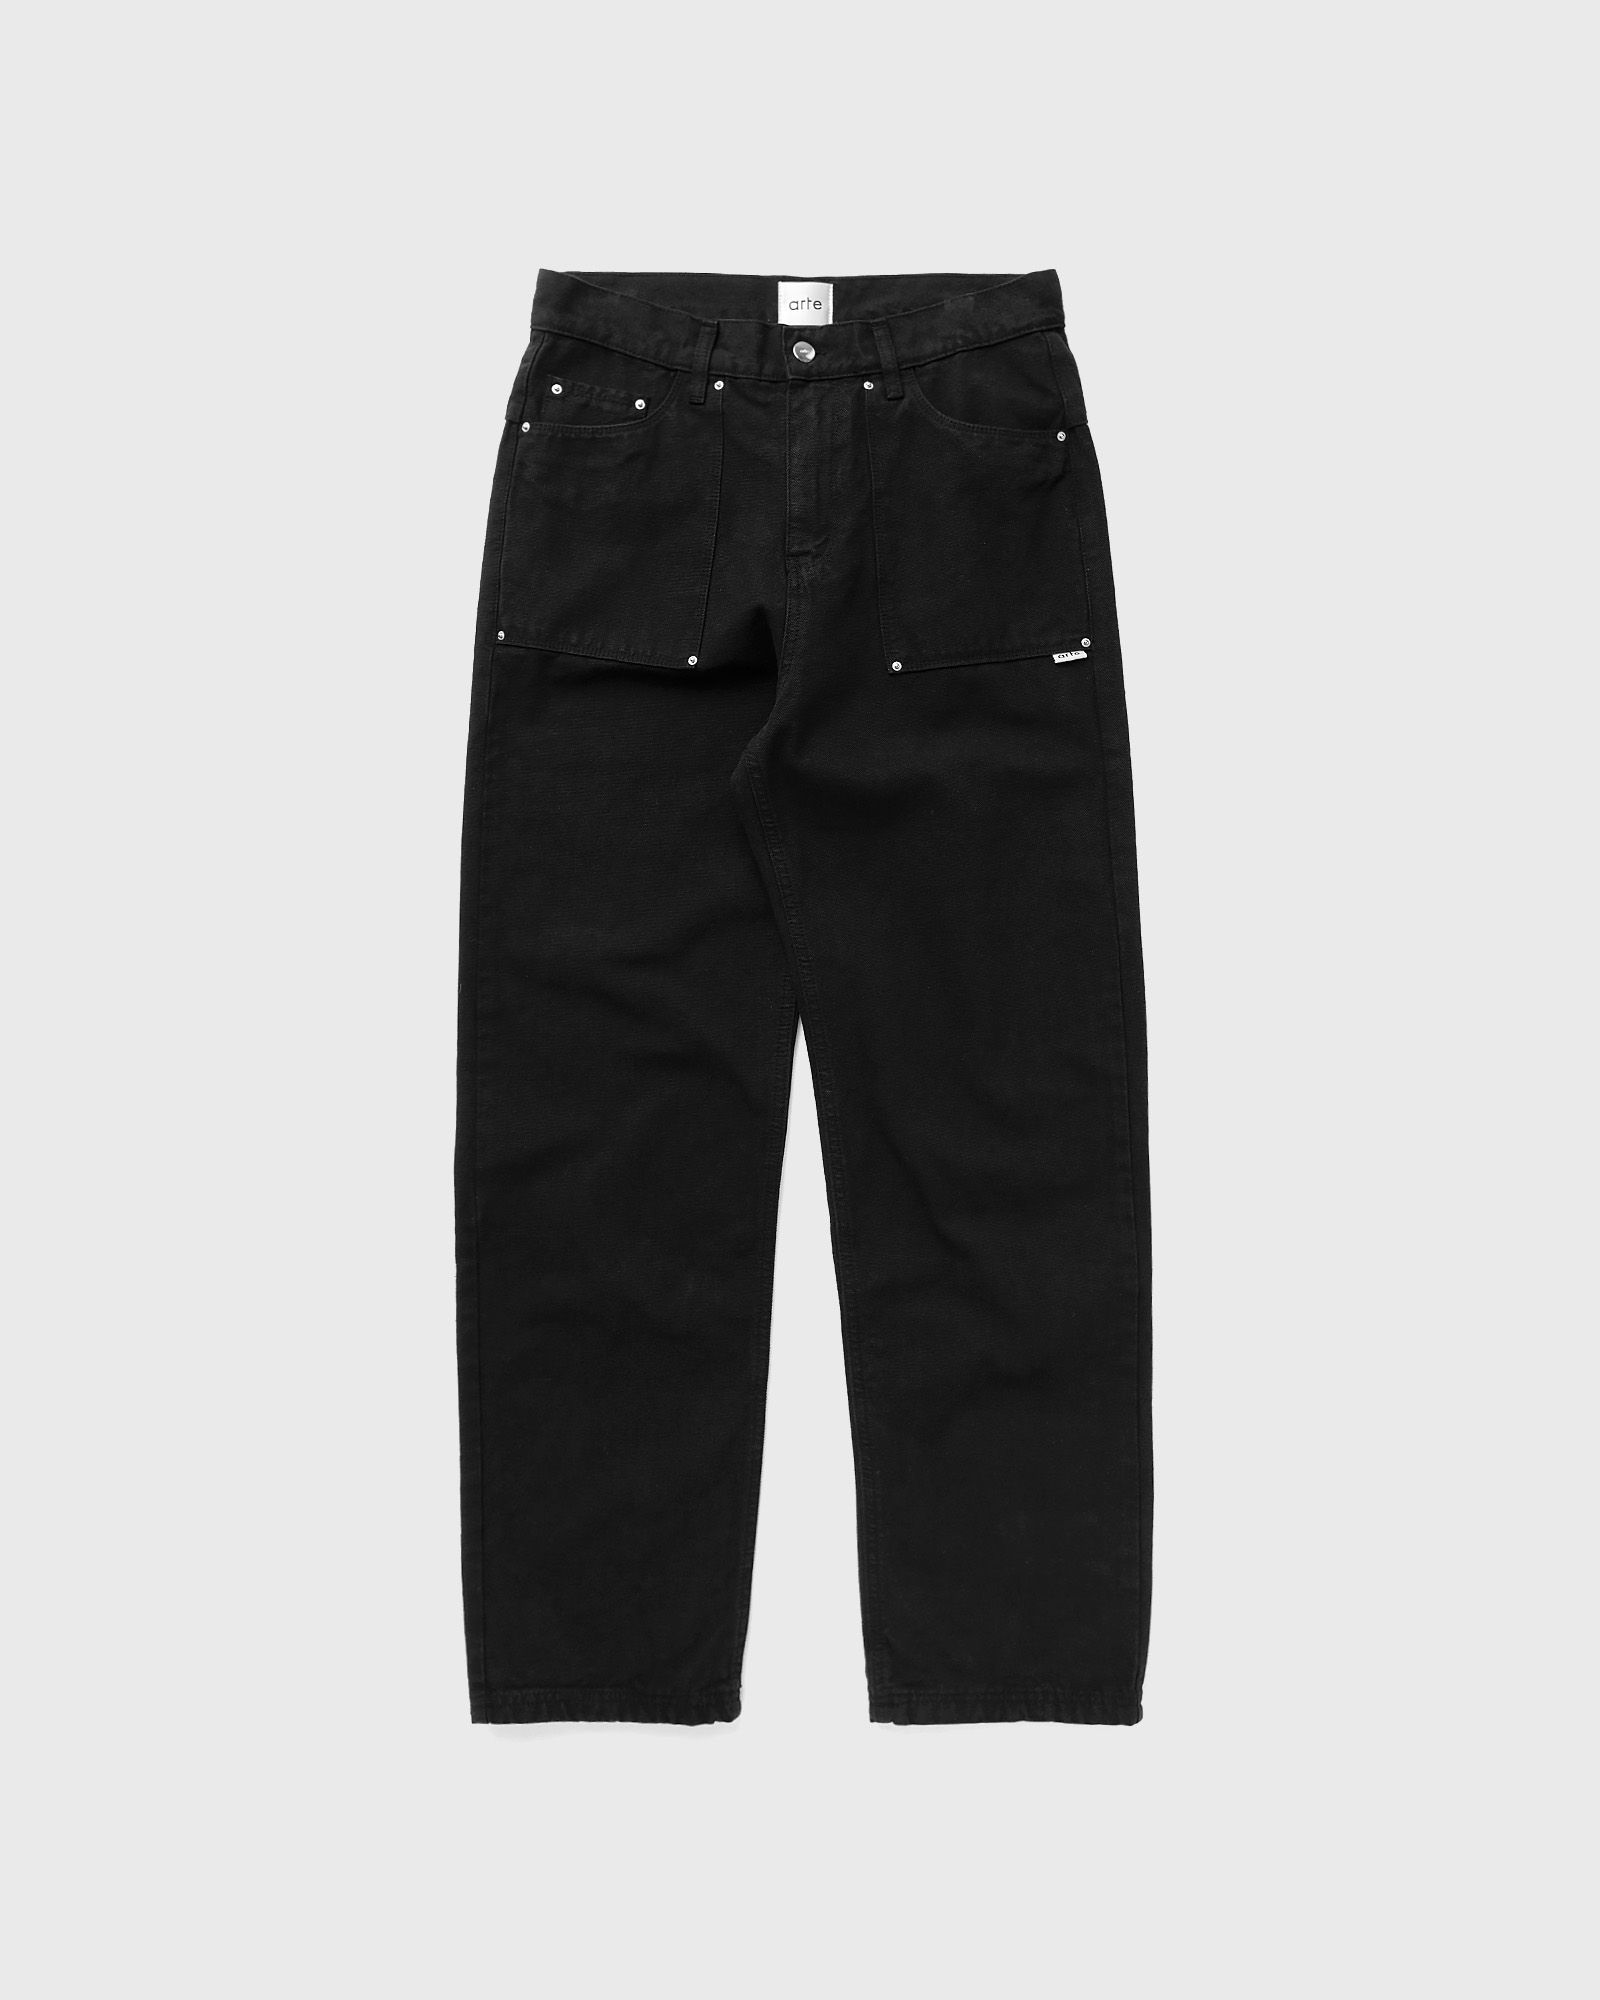 Arte Antwerp - canvas jeans men jeans black in größe:xxl